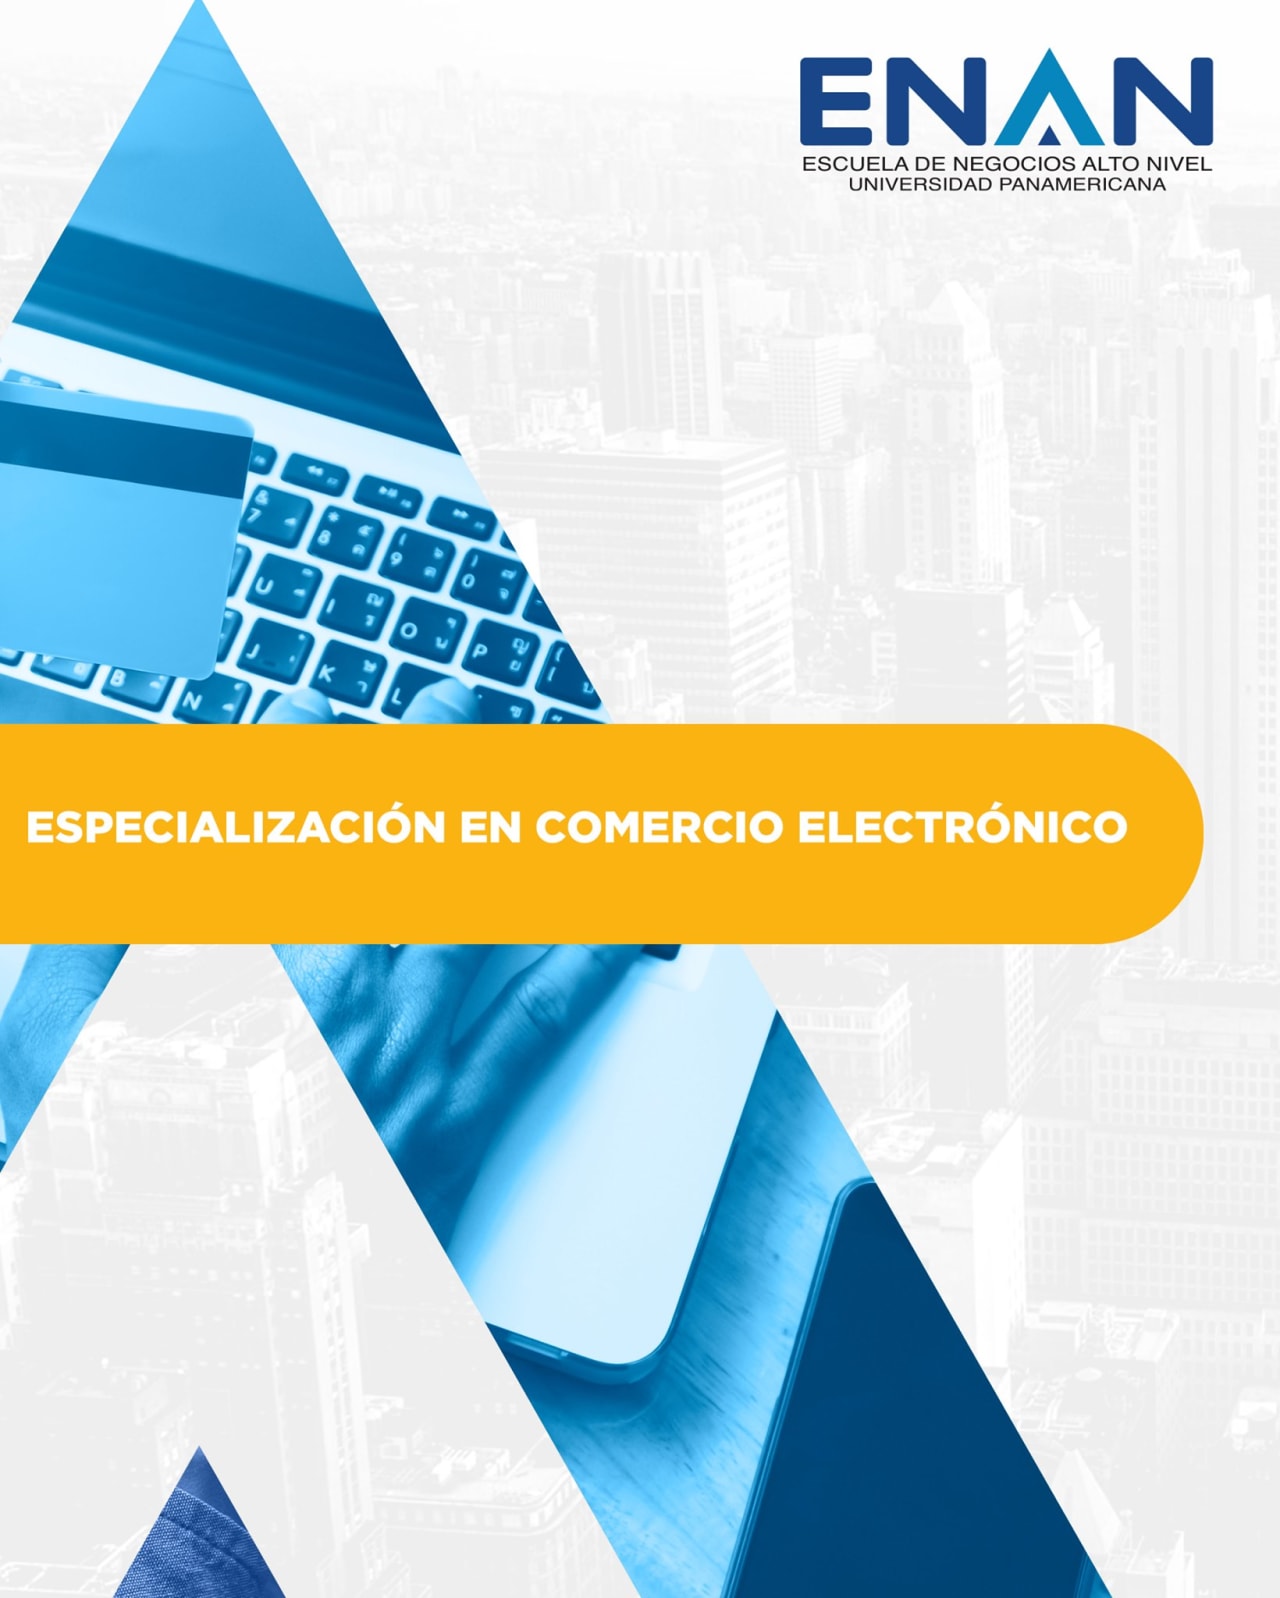 Escuela de Negocios Alto Nivel - Universidad Panamericana de Guatemala Elektronikus kereskedelem specializáció